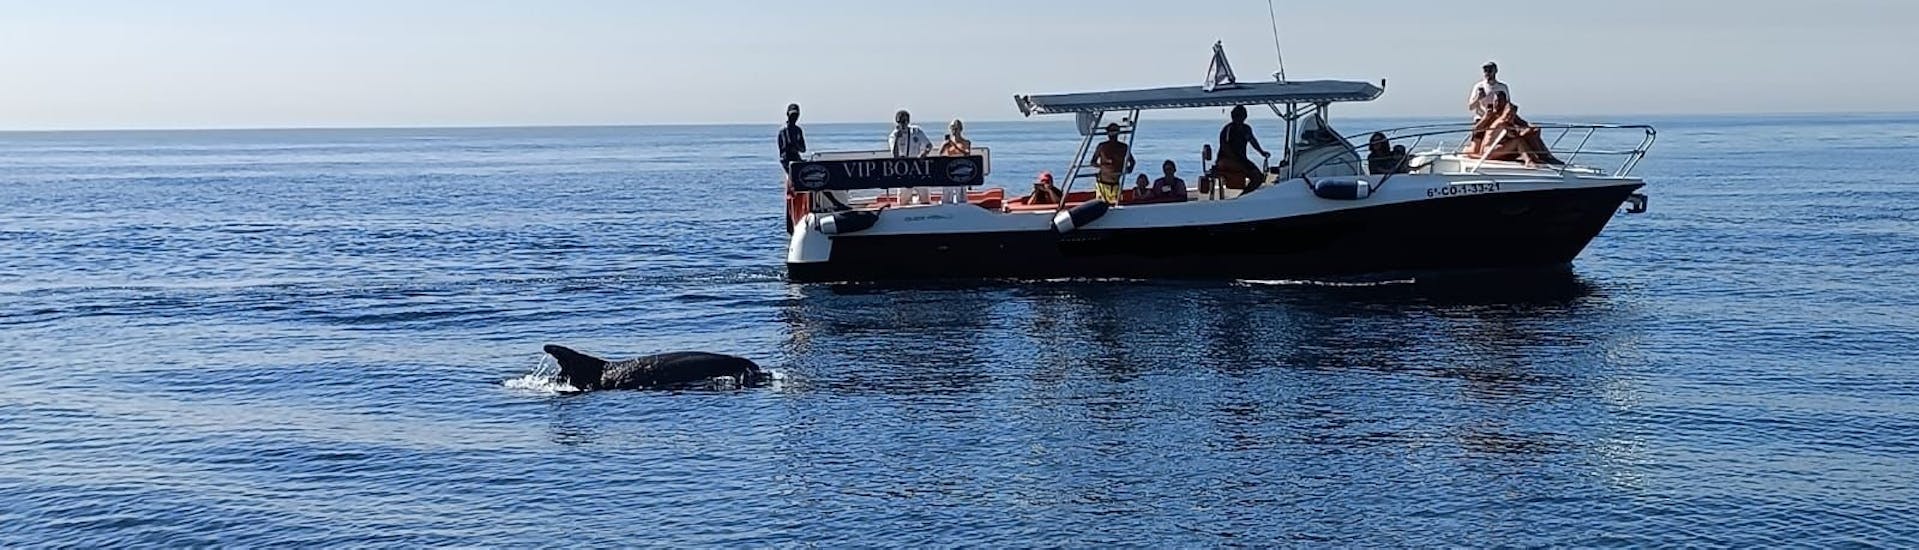 Un dauphin reste près du bateau pendant l'excursion en bateau autour de la Costa del Sol avec observation des dauphins avec Fuengirola Sea Trips.